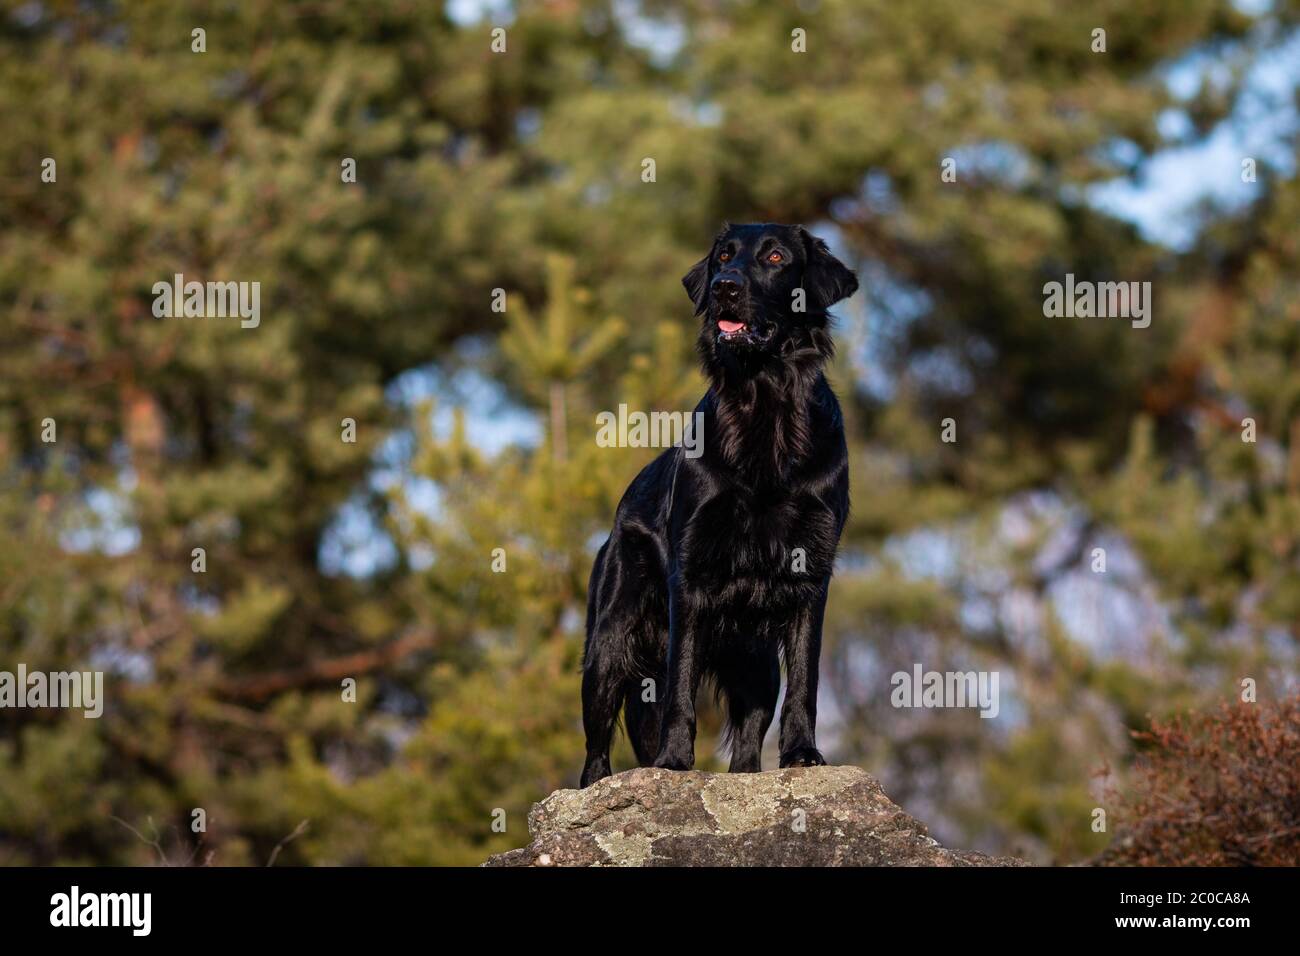 Vista Lateral De Un Lindo Perrito Perro Negro Labrador Retriever Mirando A  La Cámara Fotos, retratos, imágenes y fotografía de archivo libres de  derecho. Image 18640989